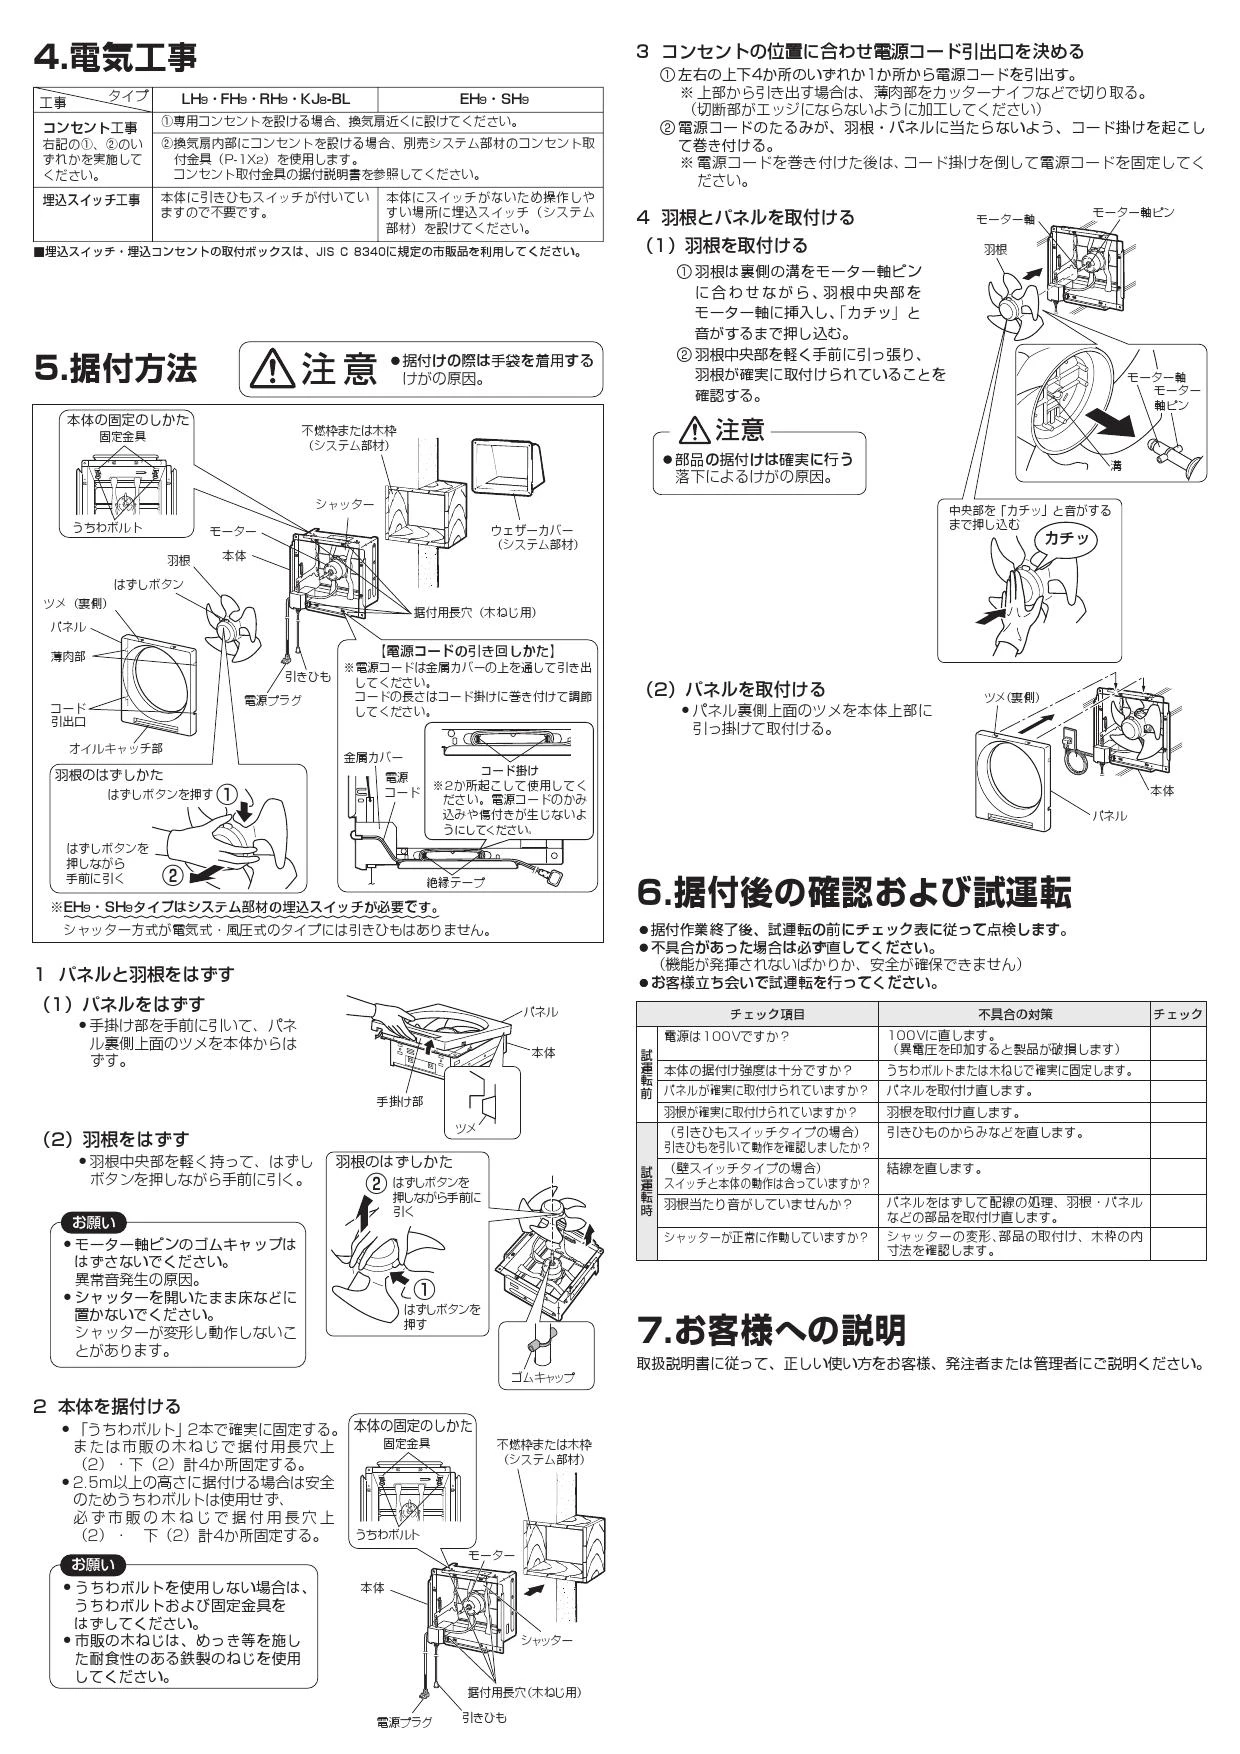 【新品未使用】三菱 標準換気扇 クリーンコンパック EX-30EH9